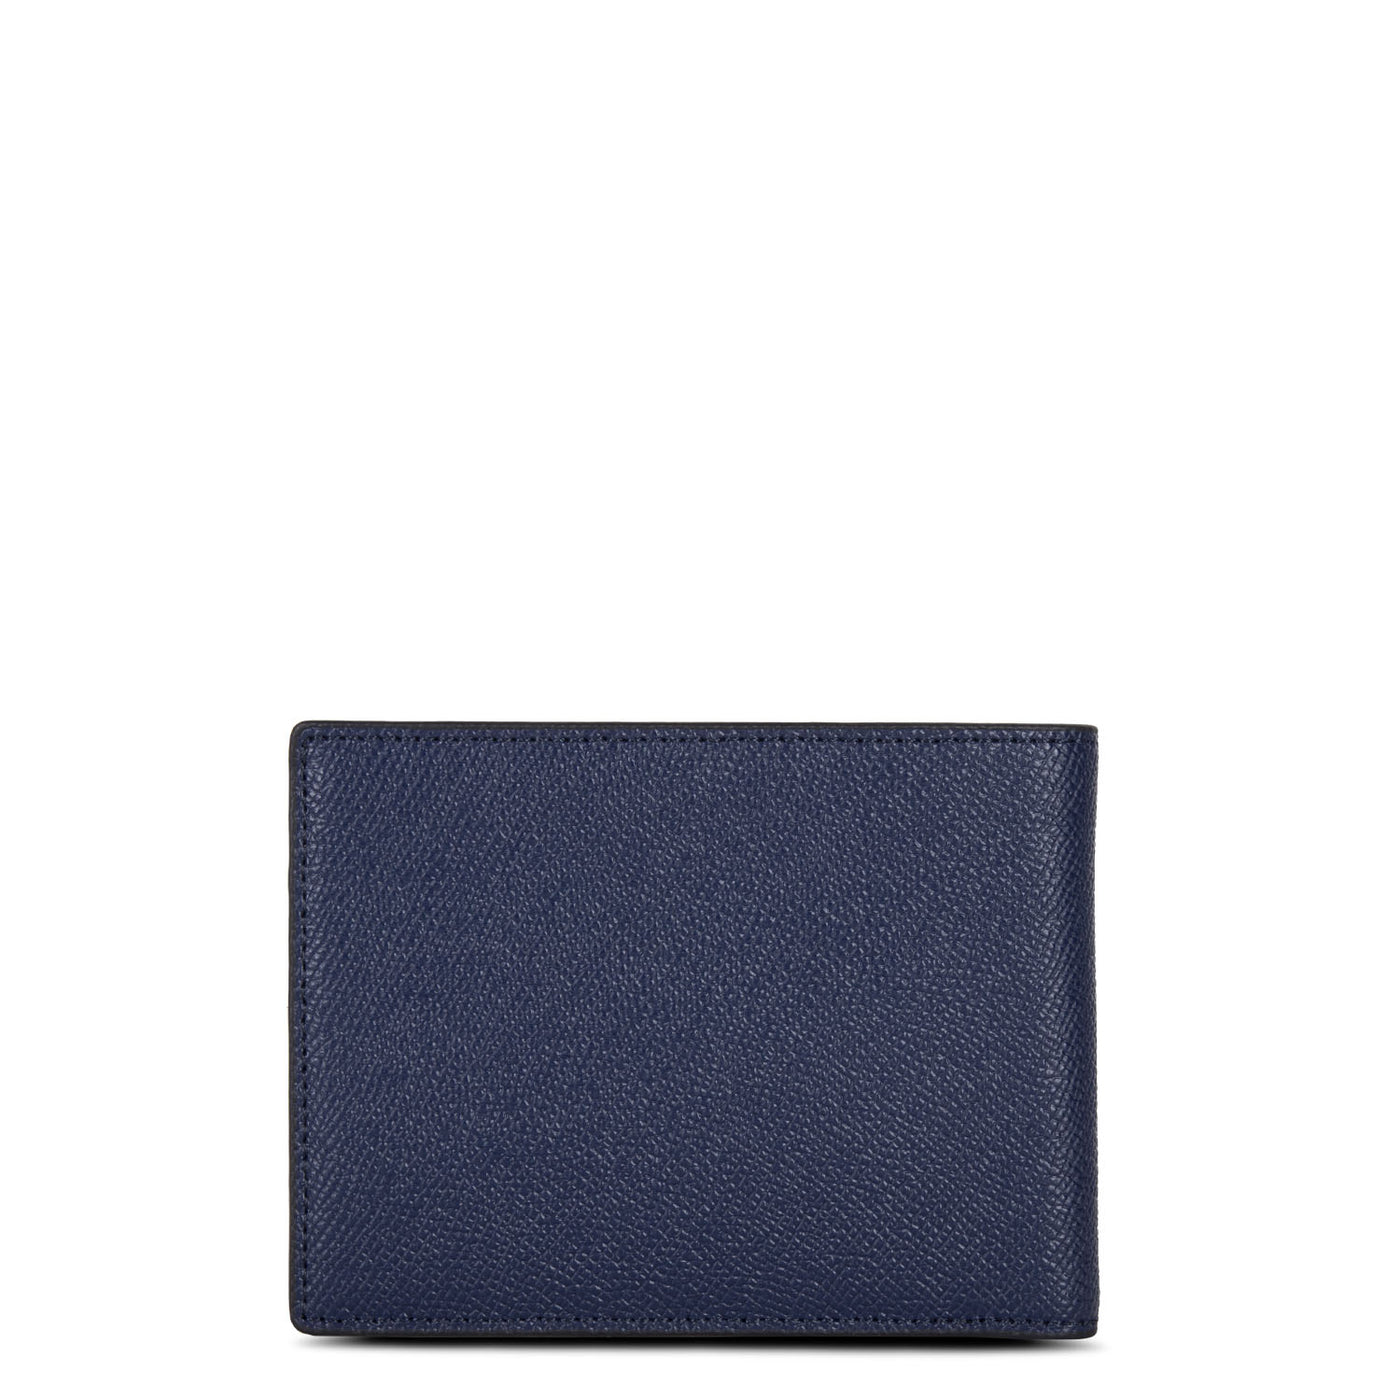 porte-cartes - delphino lucas #couleur_bleu-fonc